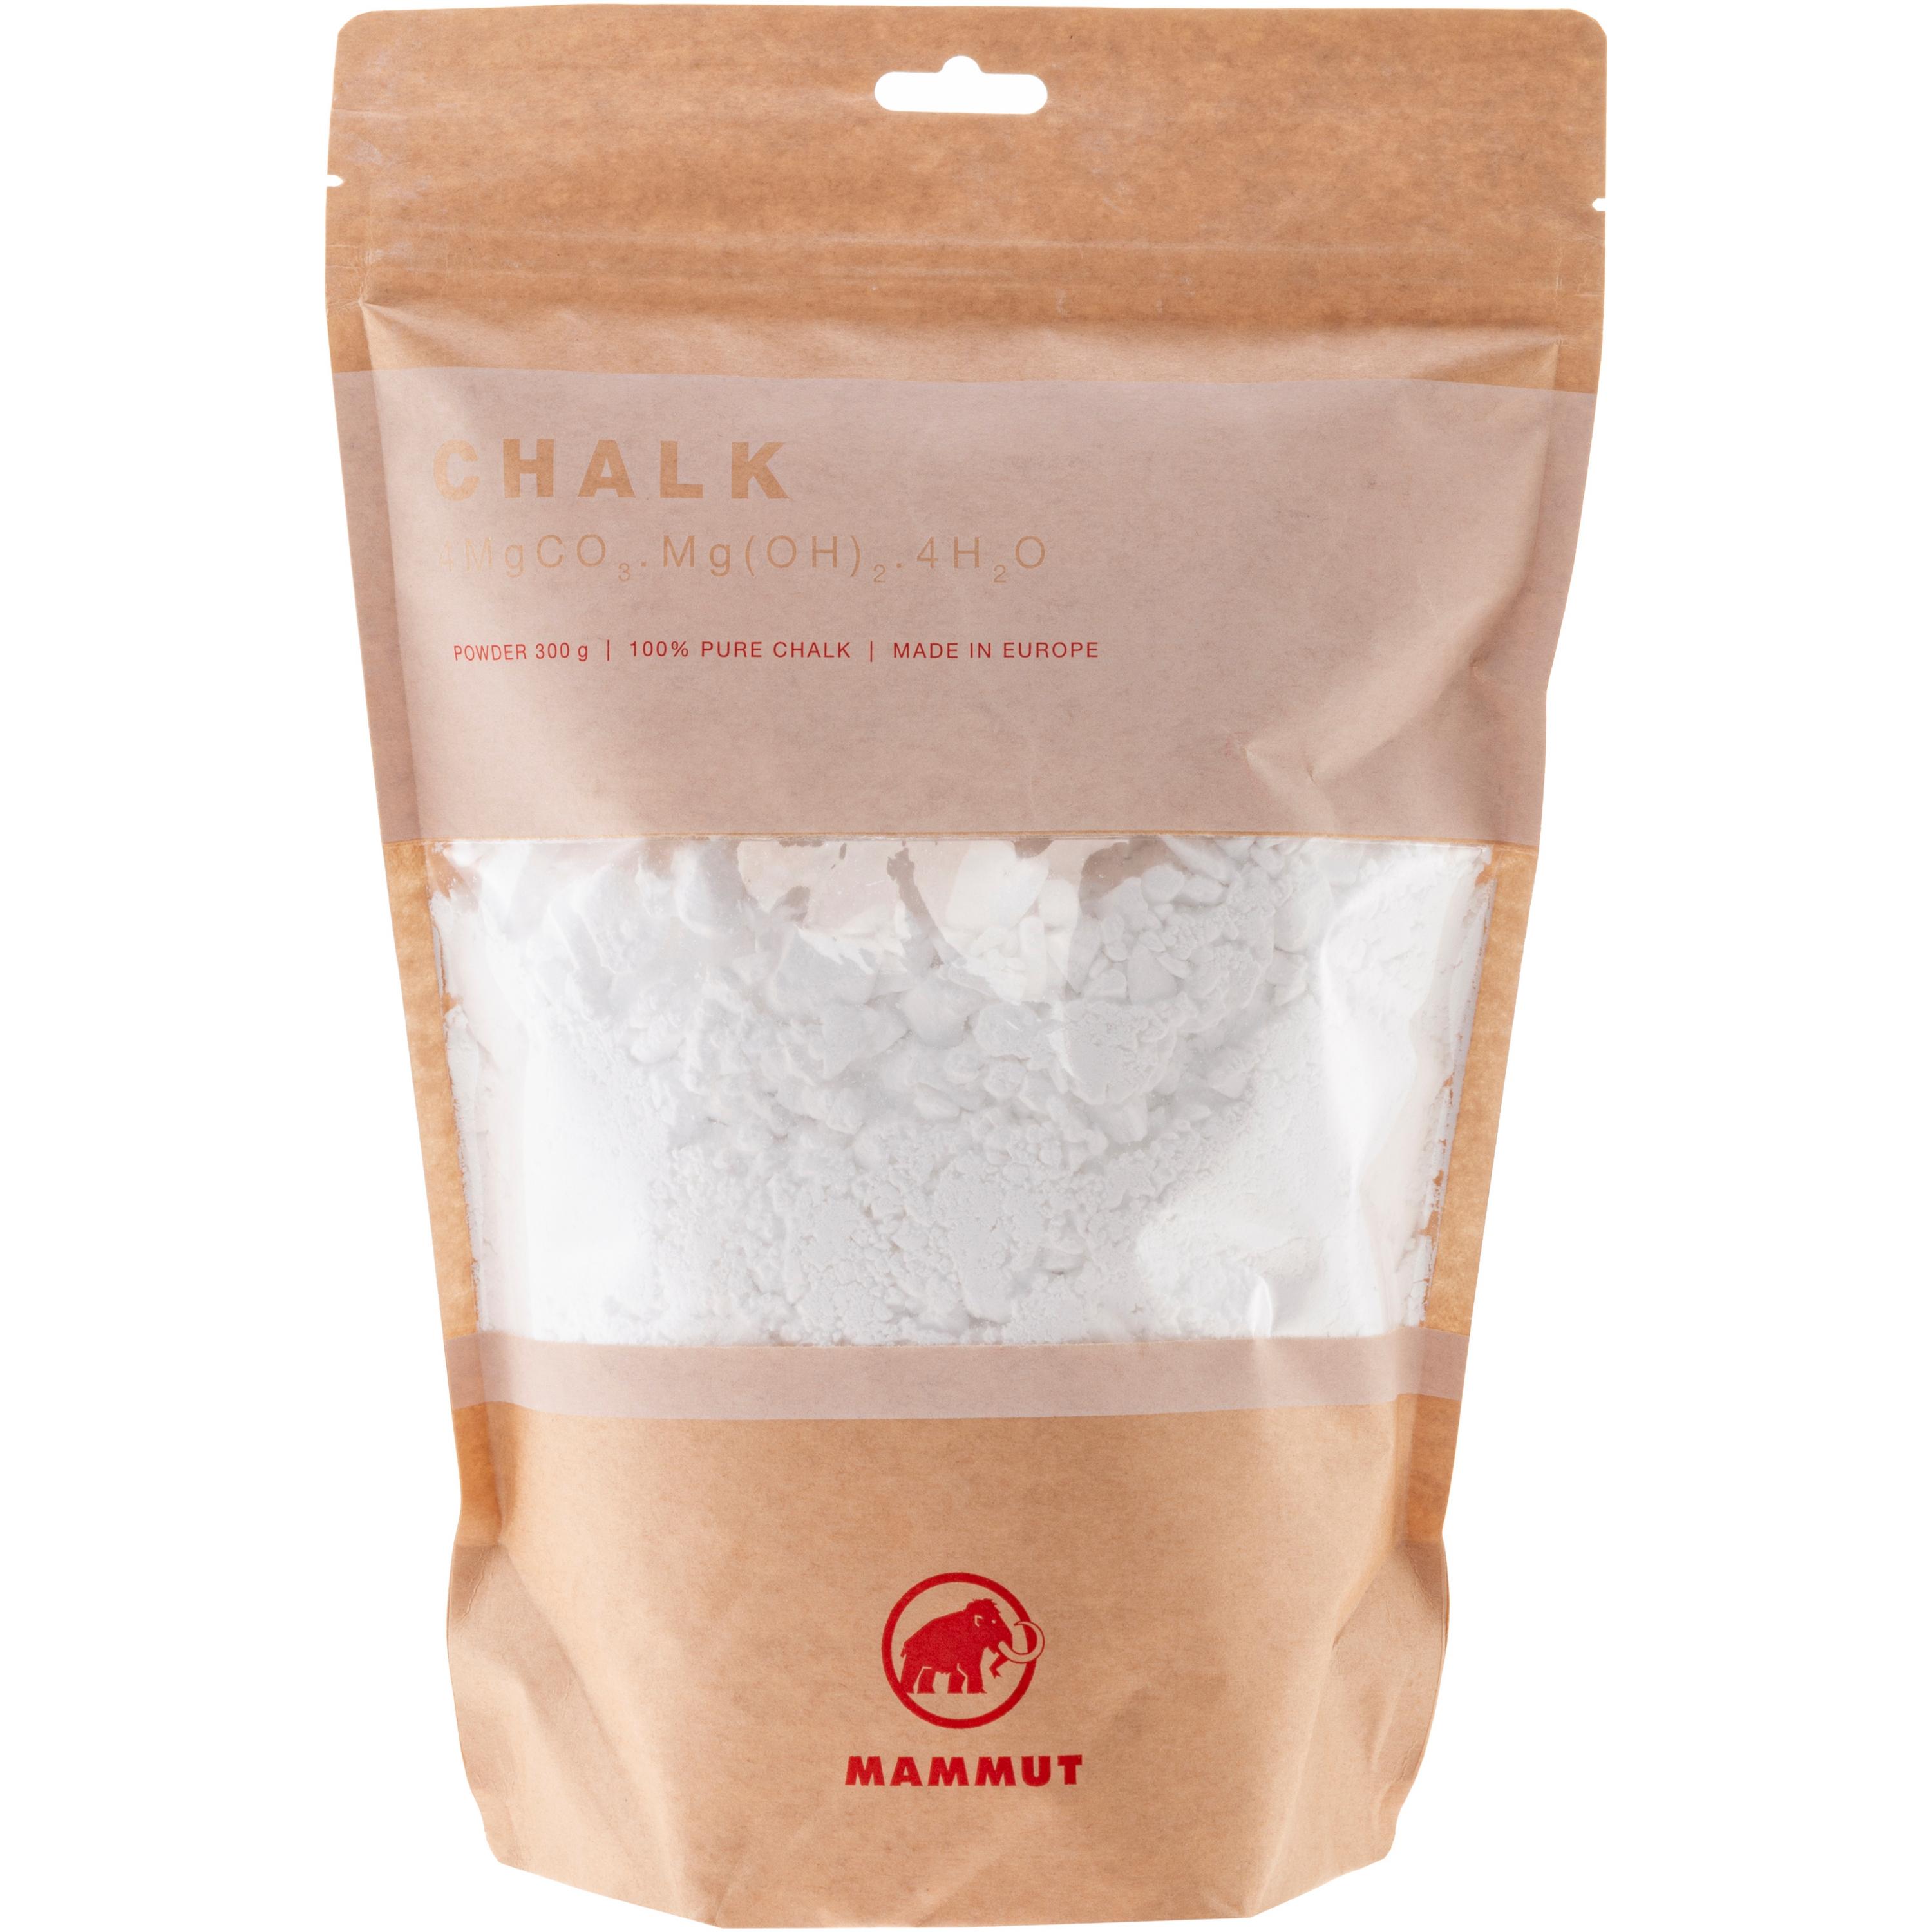 Image of Mammut Chalk Powder 300 g Chalk